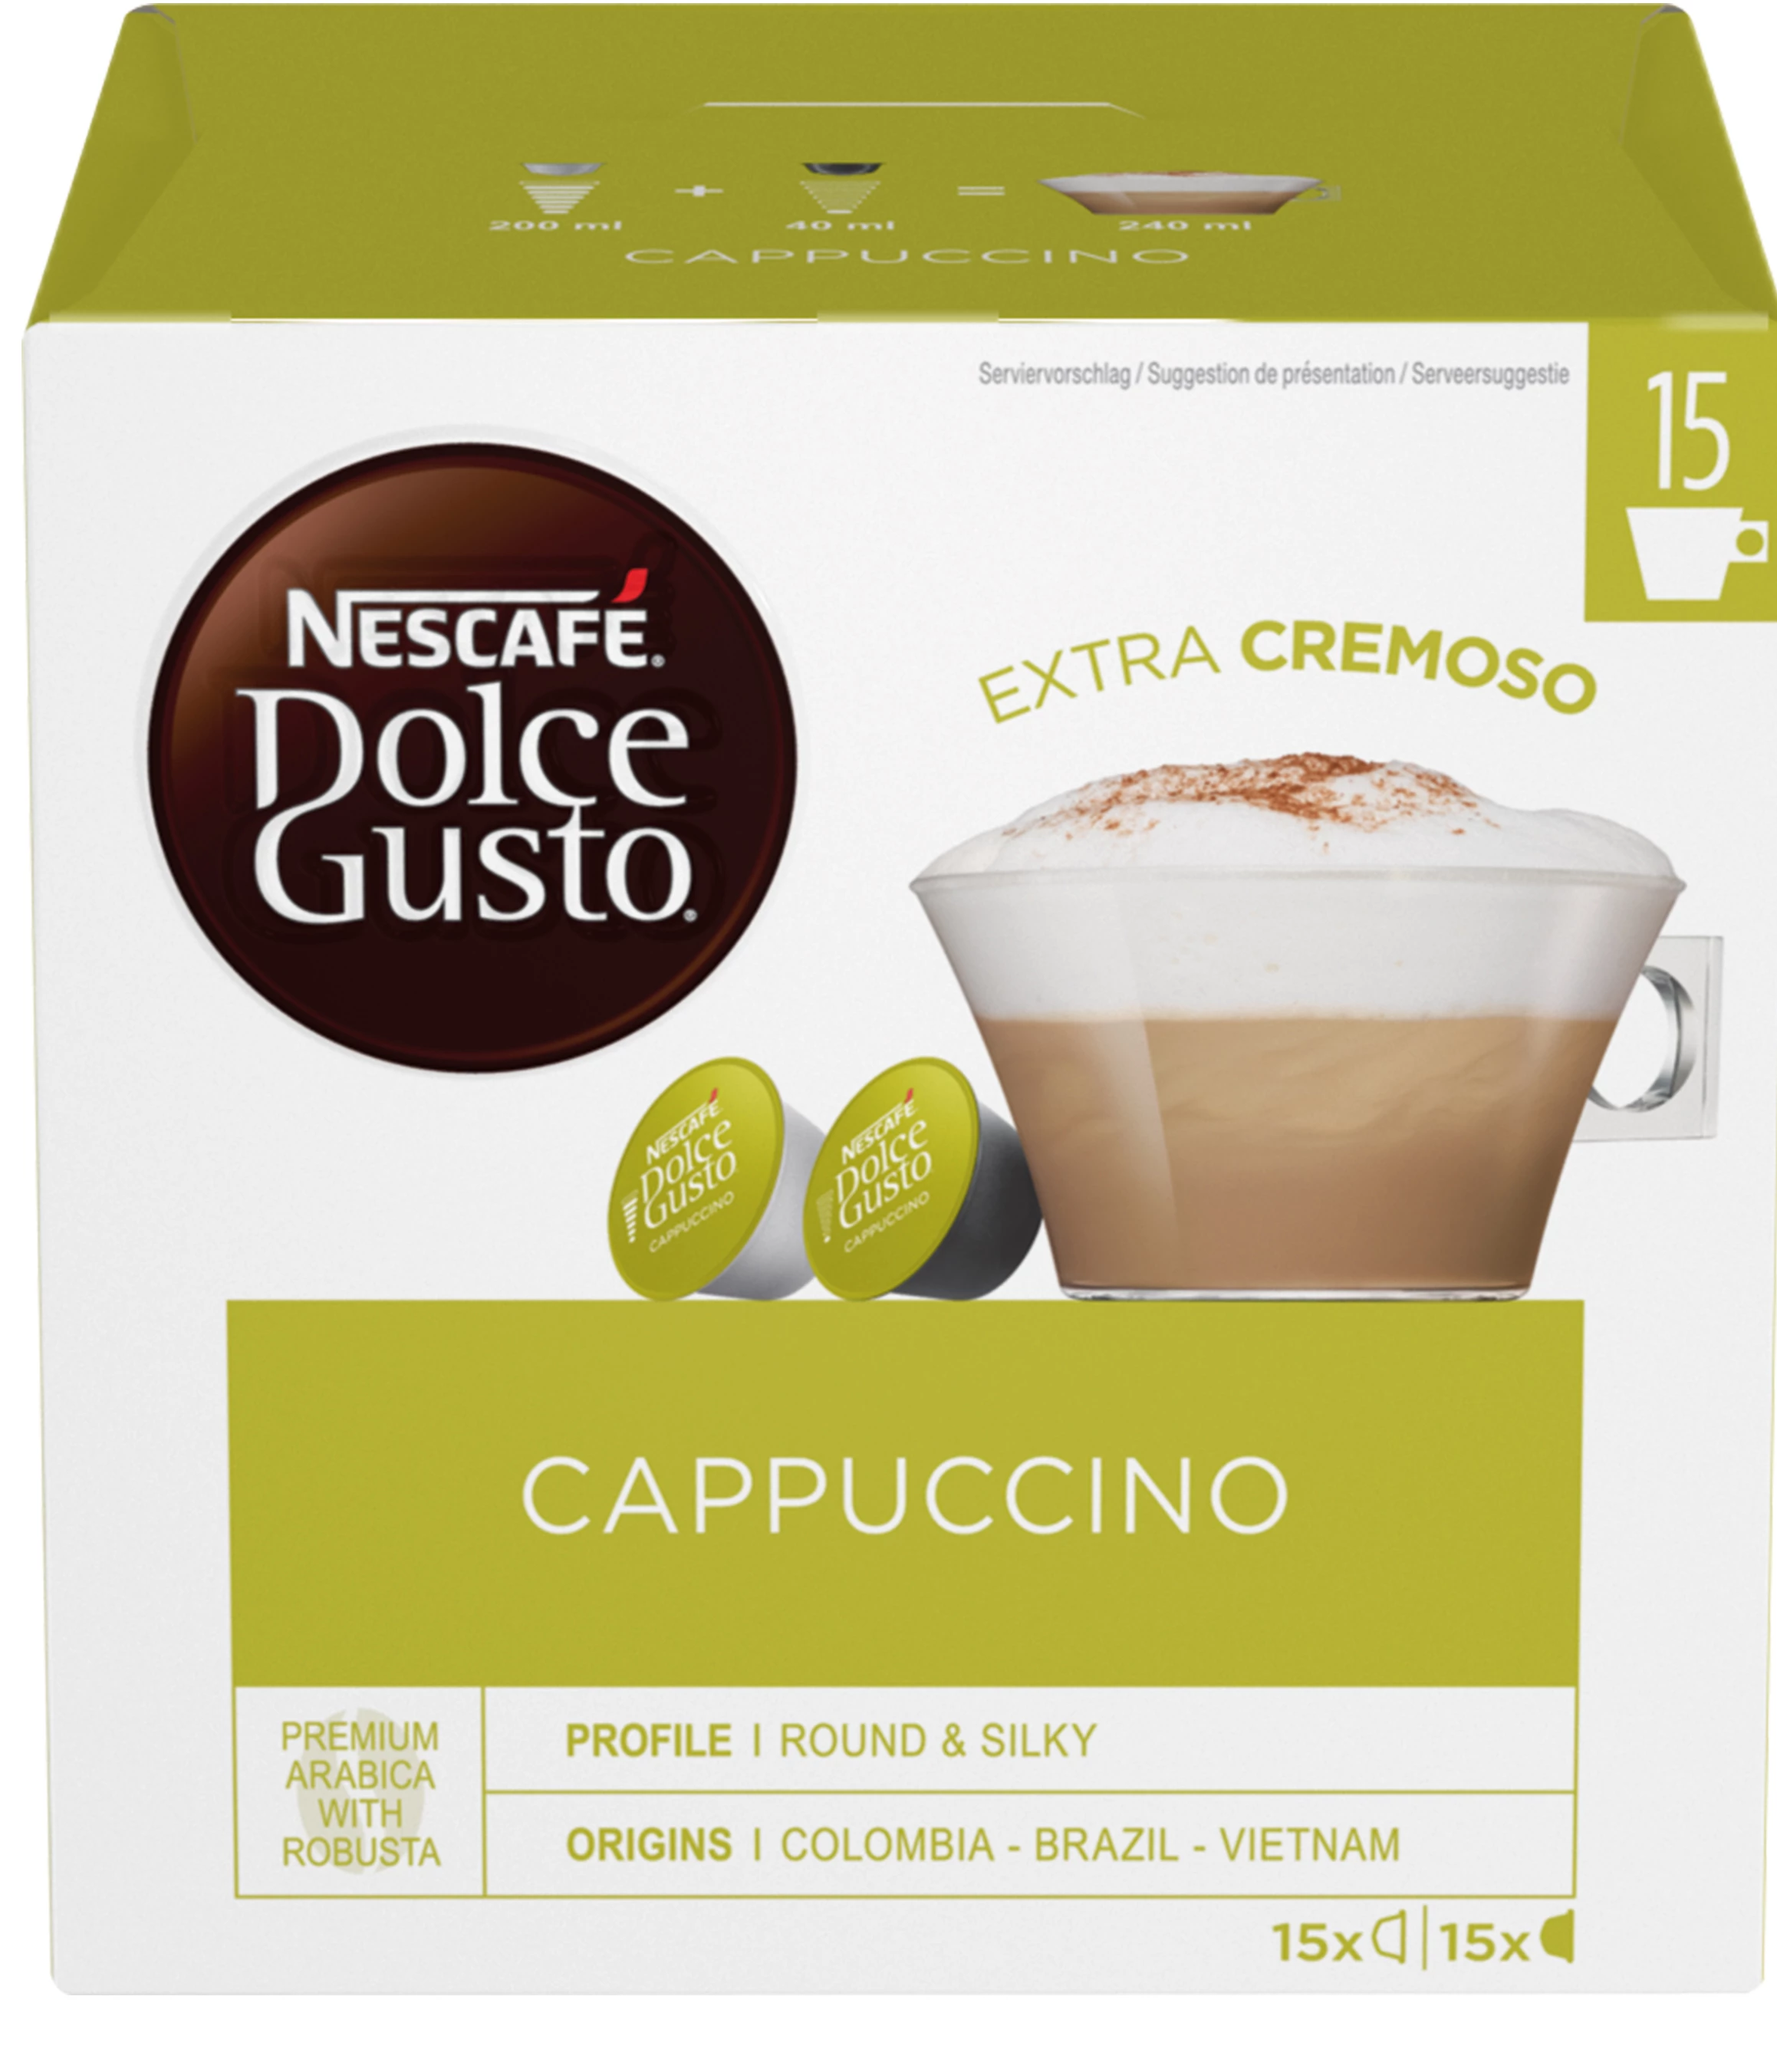 Cappuccinox30 - NESCAFE DOLCE GUSTO